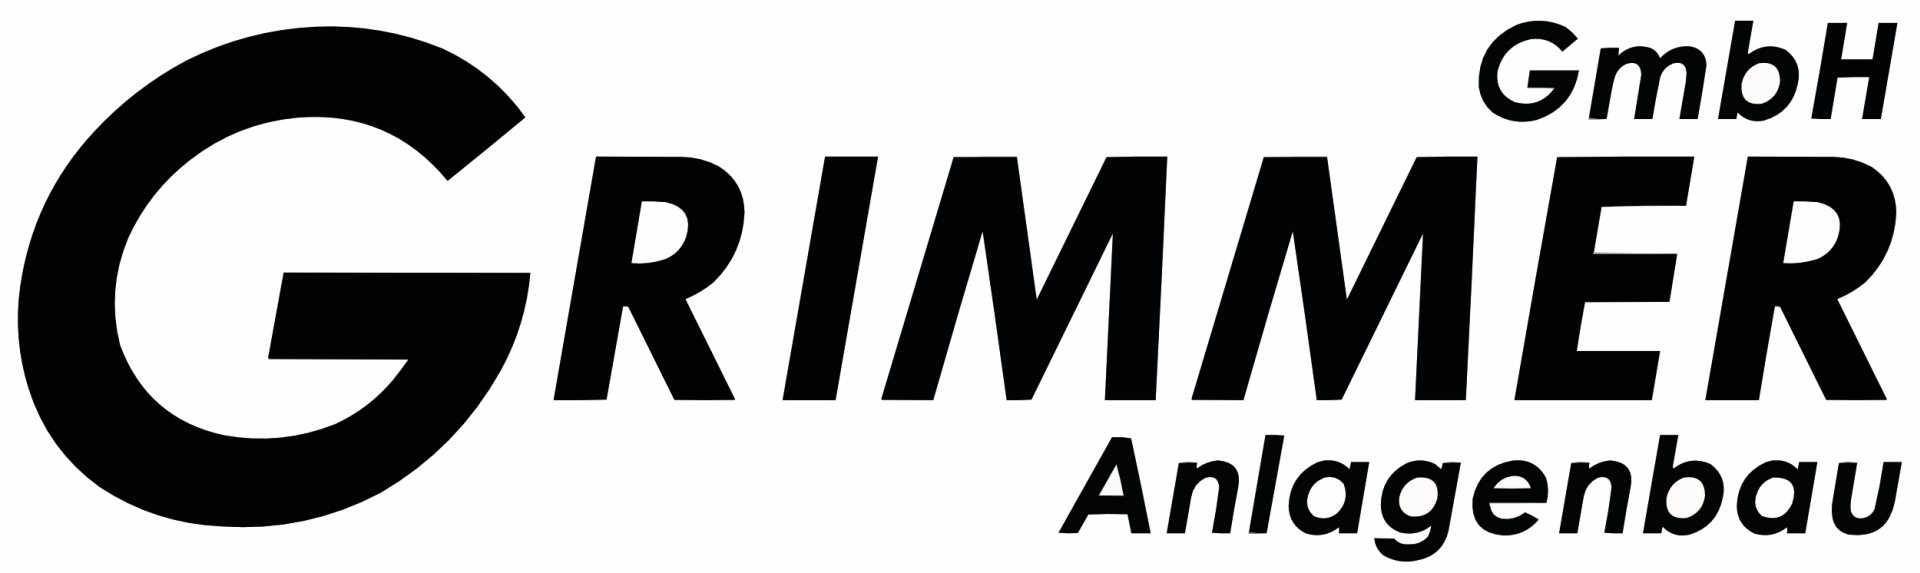 Grimmer GmbH